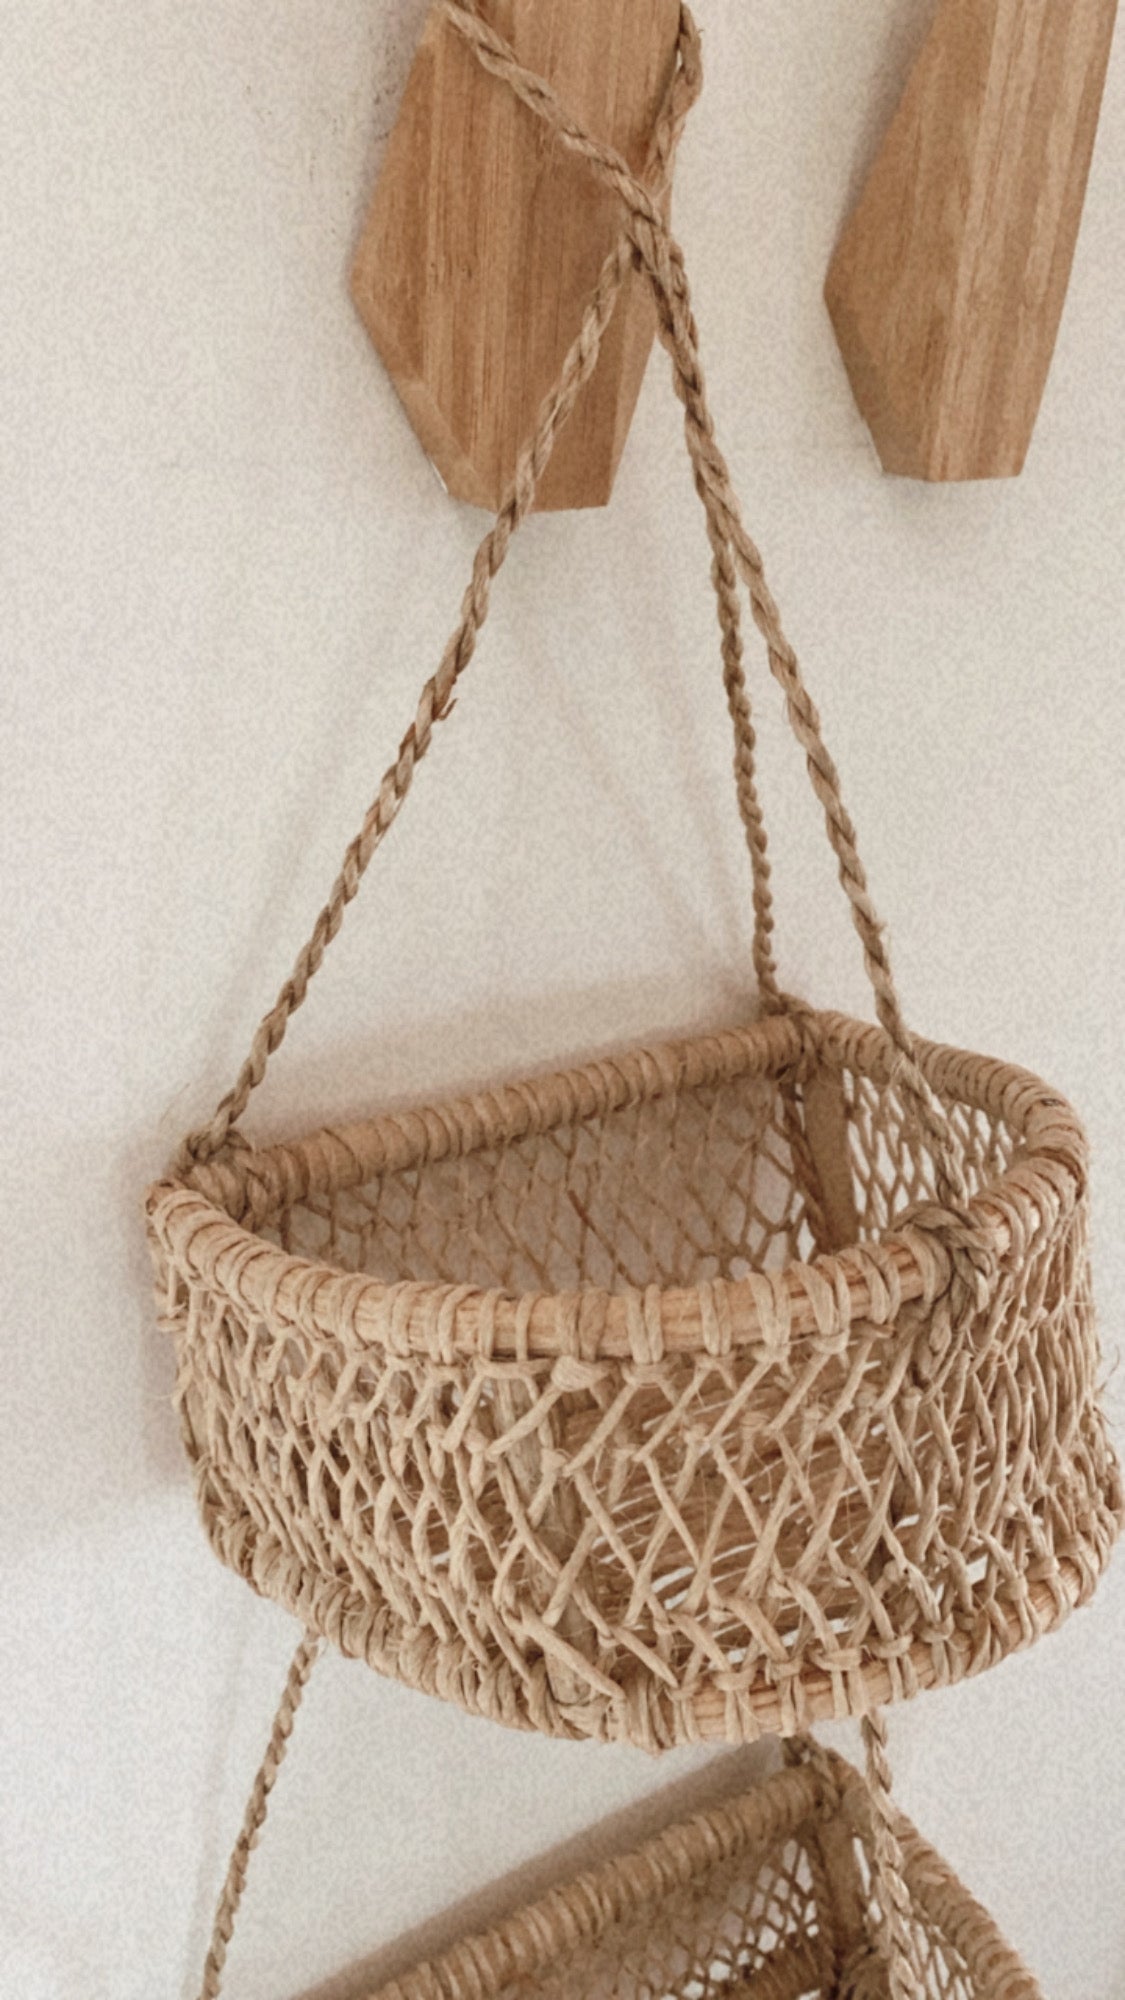 Crescent Hanging Basket